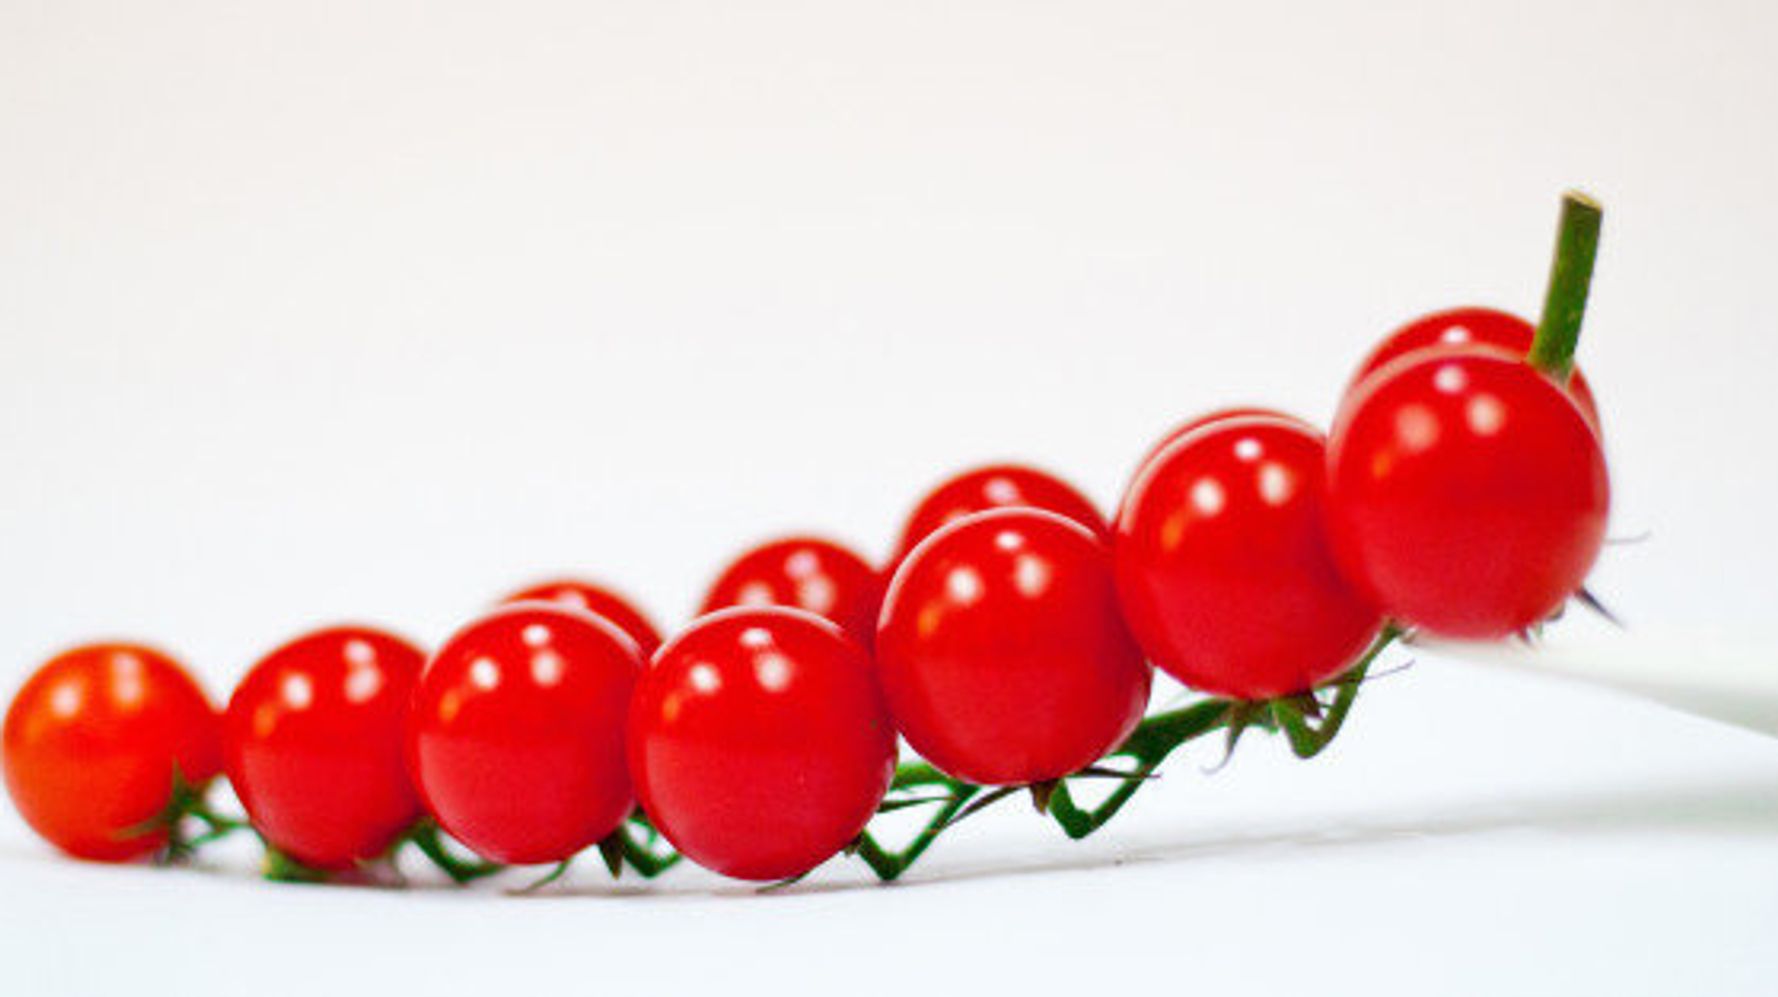 Comment La Tomate Cerise Est Devenue La Meilleure Amie De L Apero Le Huffington Post Life